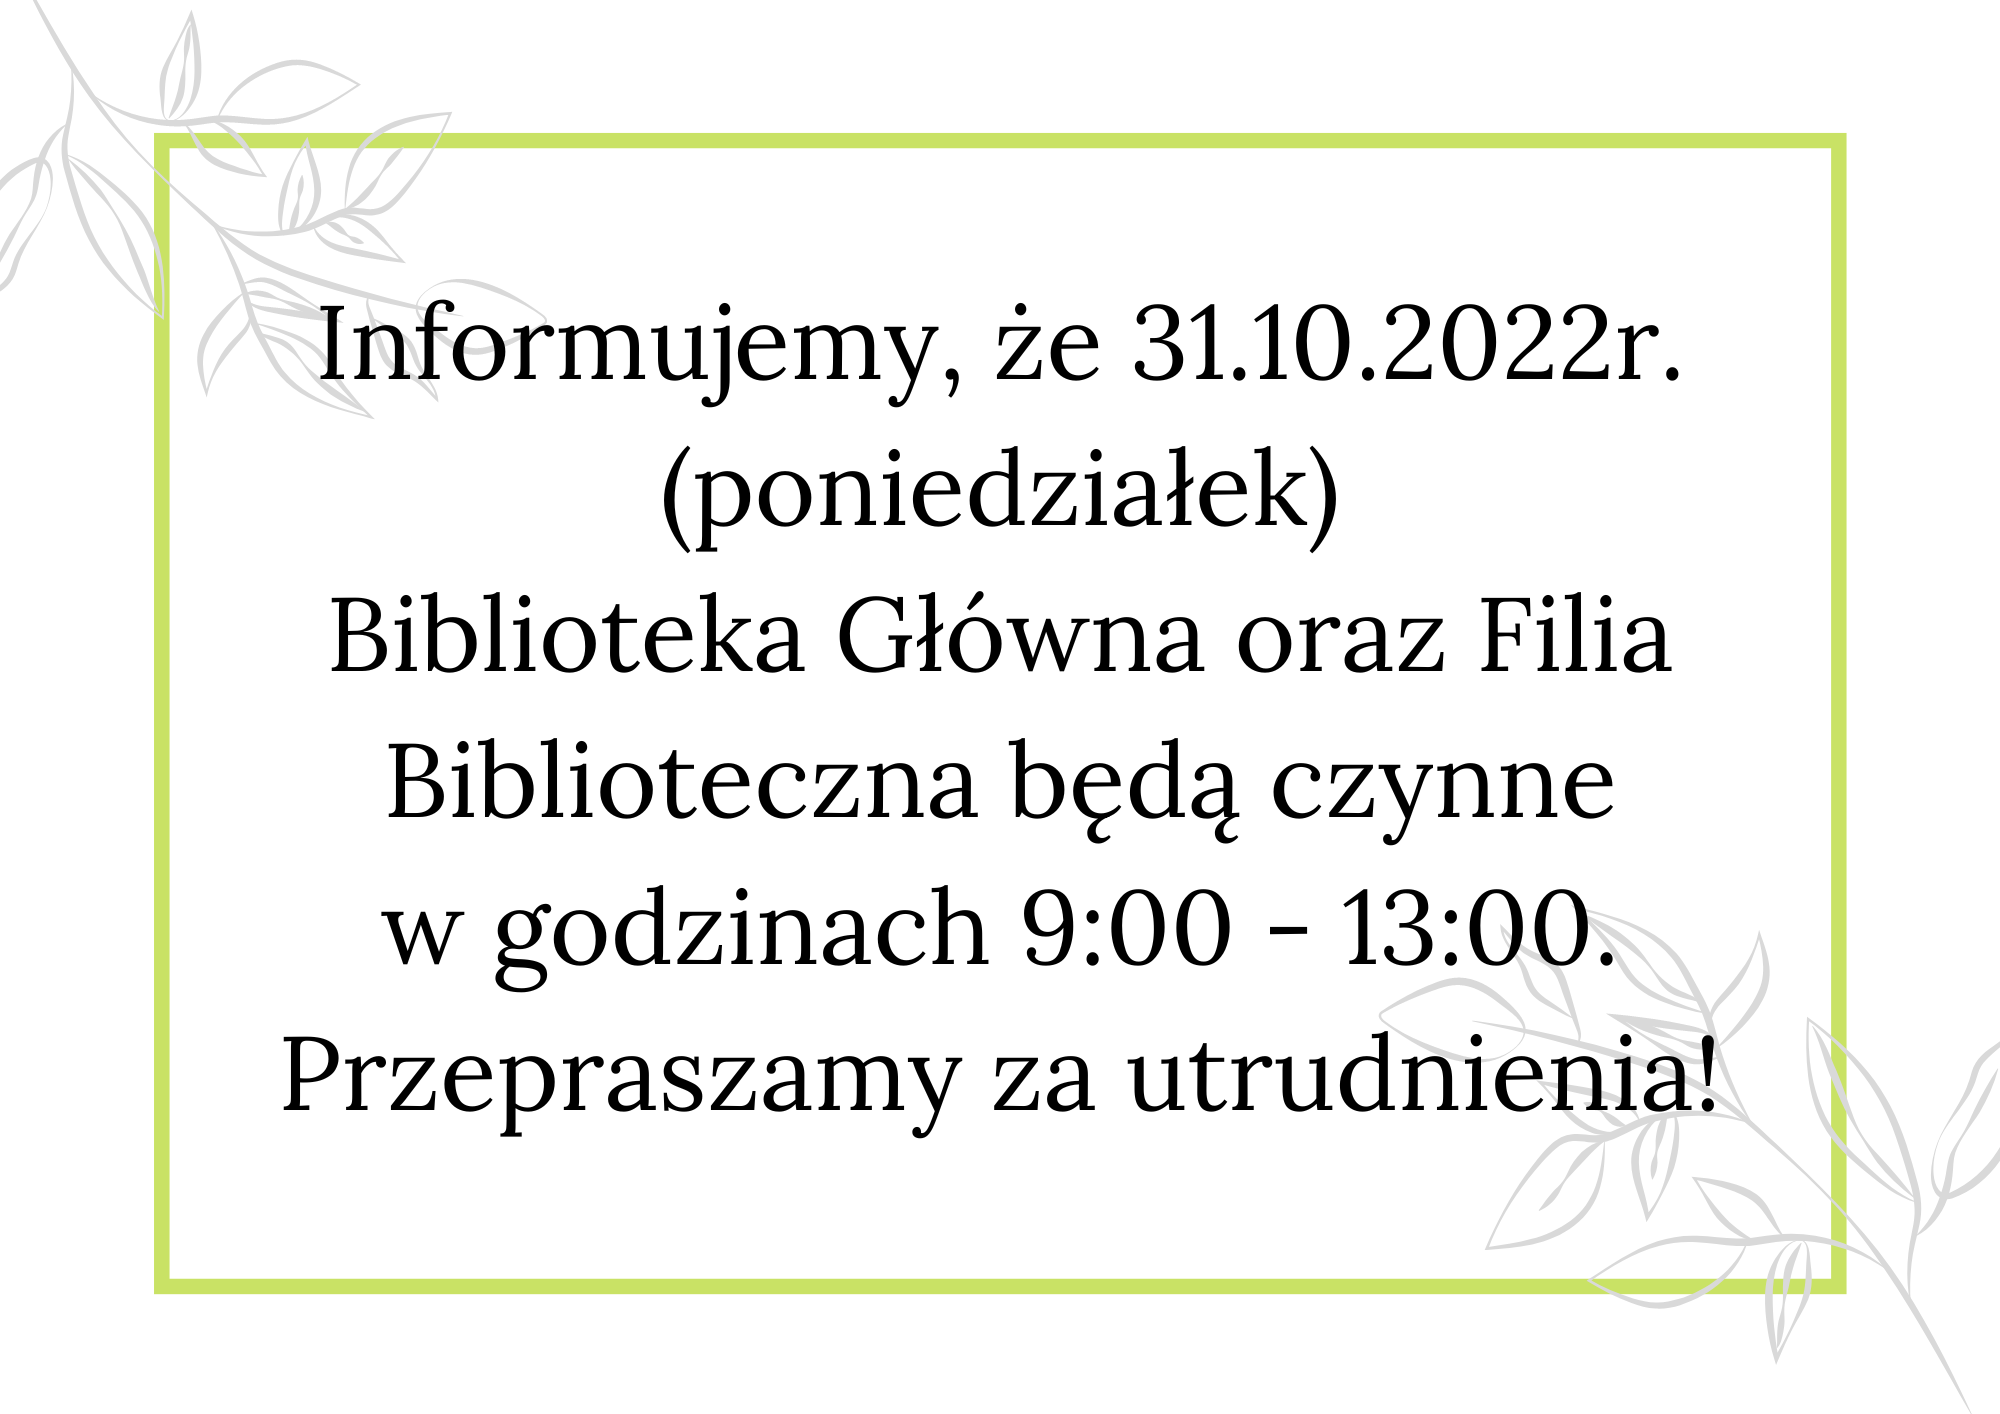 Informujemy, że dnia 31.10.2022r. obie placówki biblioteczne będą czynne do godziny 13.00. Za utrudnienia przepraszamy!